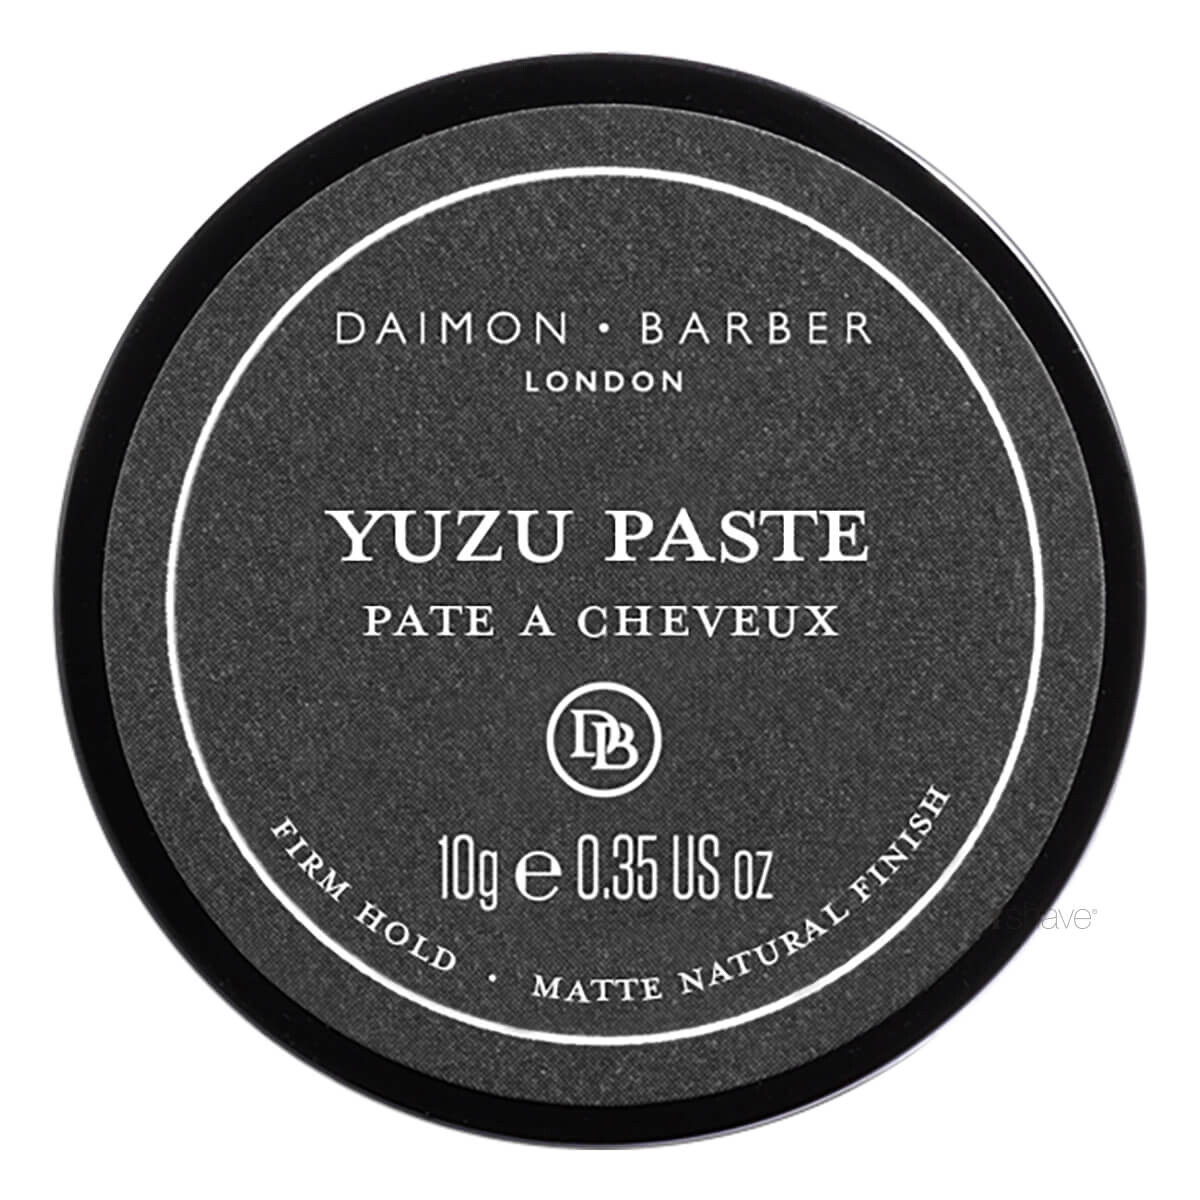 Daimon Barber Yuzu Paste, SAMPLE, 10 gr.